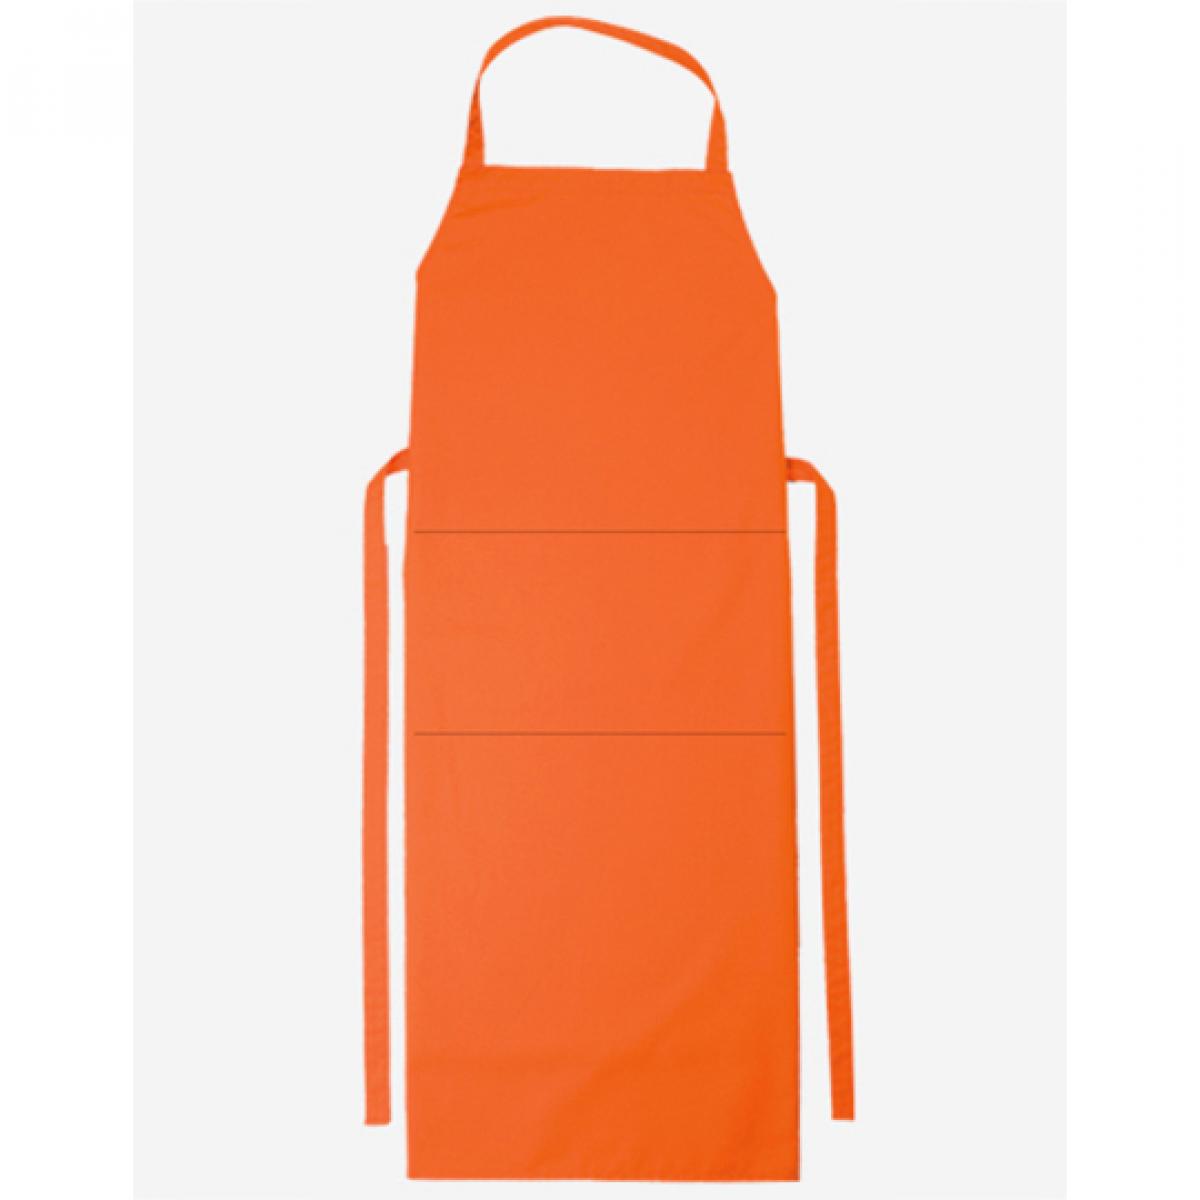 Hersteller: CG Workwear Herstellernummer: 01146-01 Artikelbezeichnung: Latzschürze Verona Classic Bag 90 x 75 cm Farbe: Orange